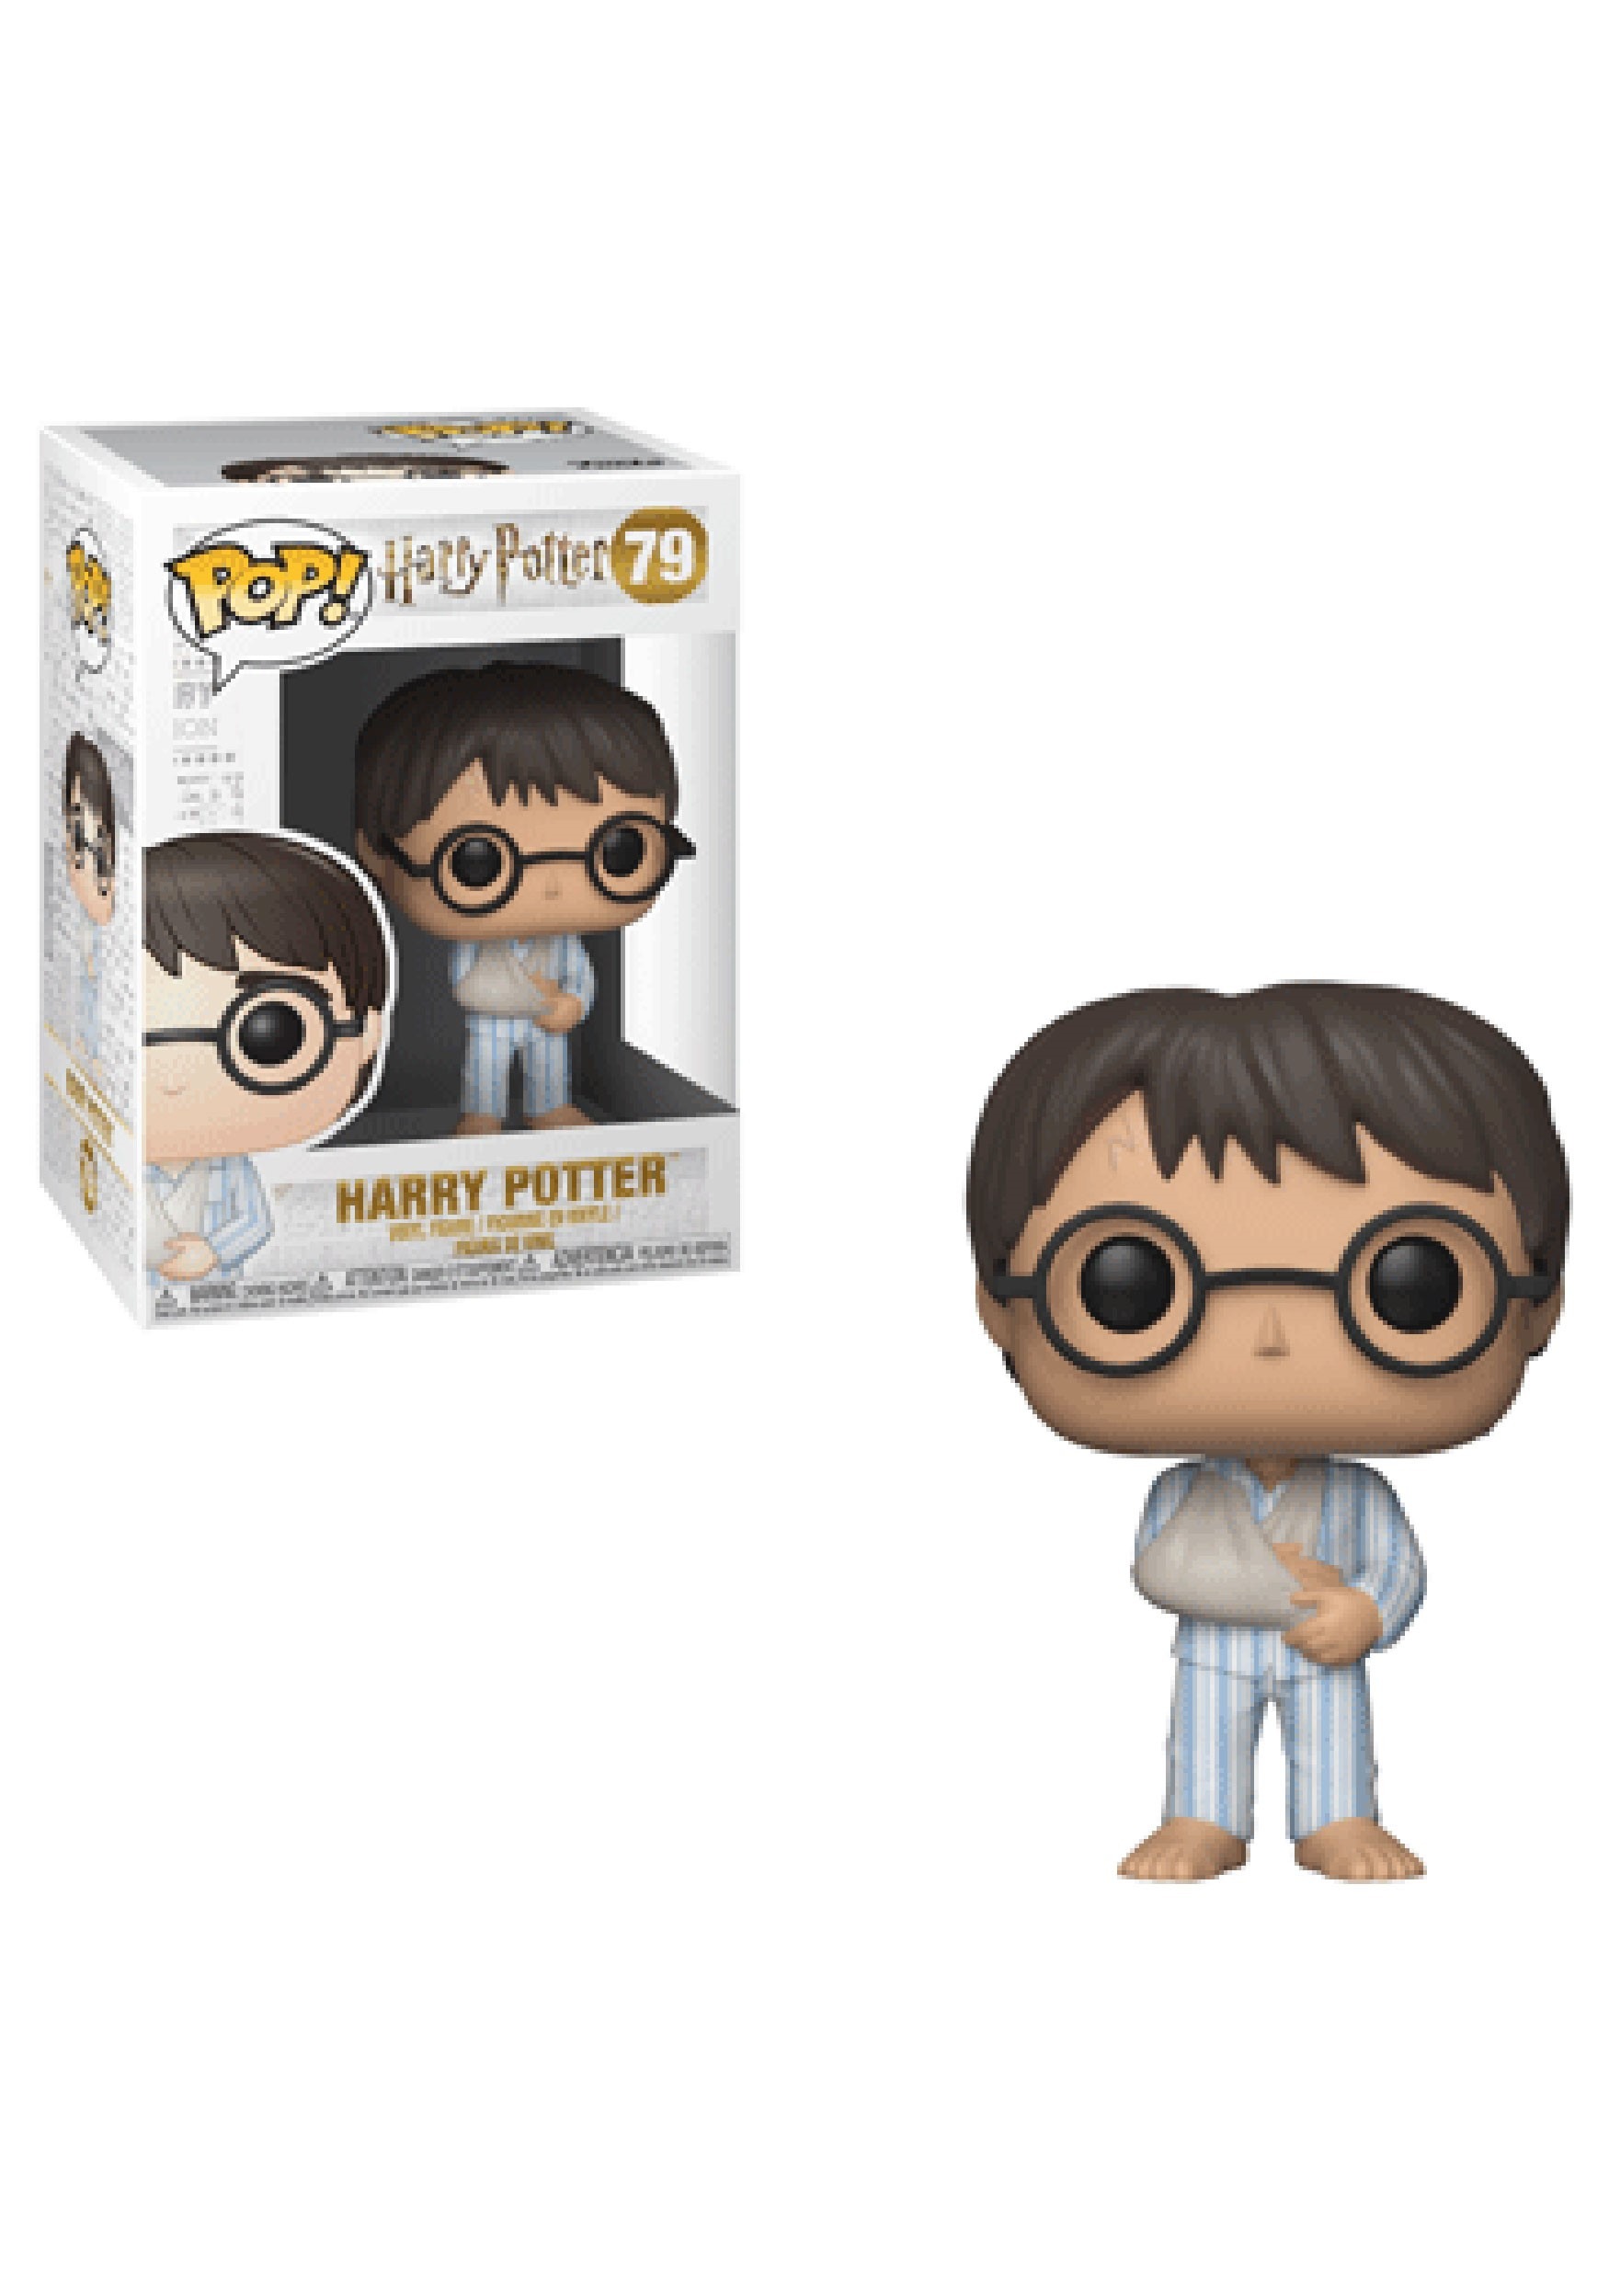 Pop! Harry Potter- Harry Potter in PJs Figure